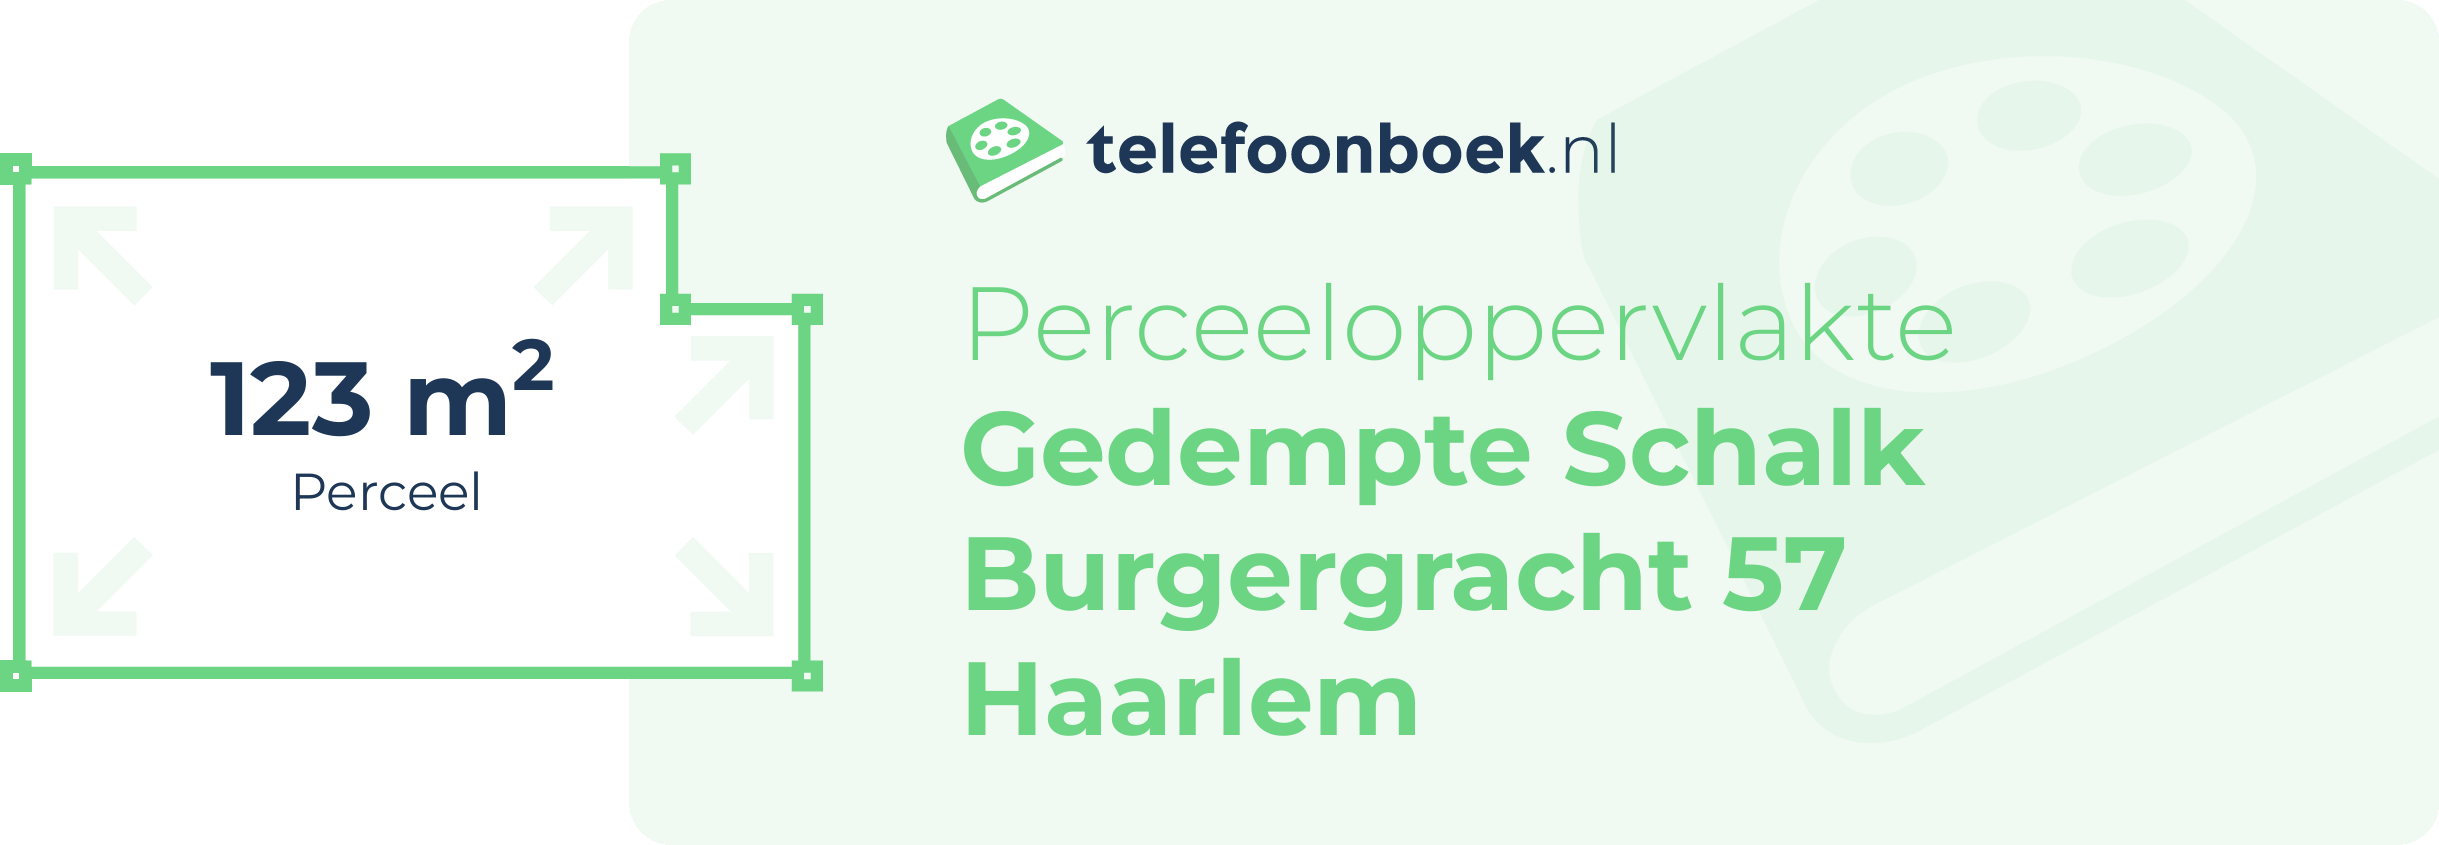 Perceeloppervlakte Gedempte Schalk Burgergracht 57 Haarlem